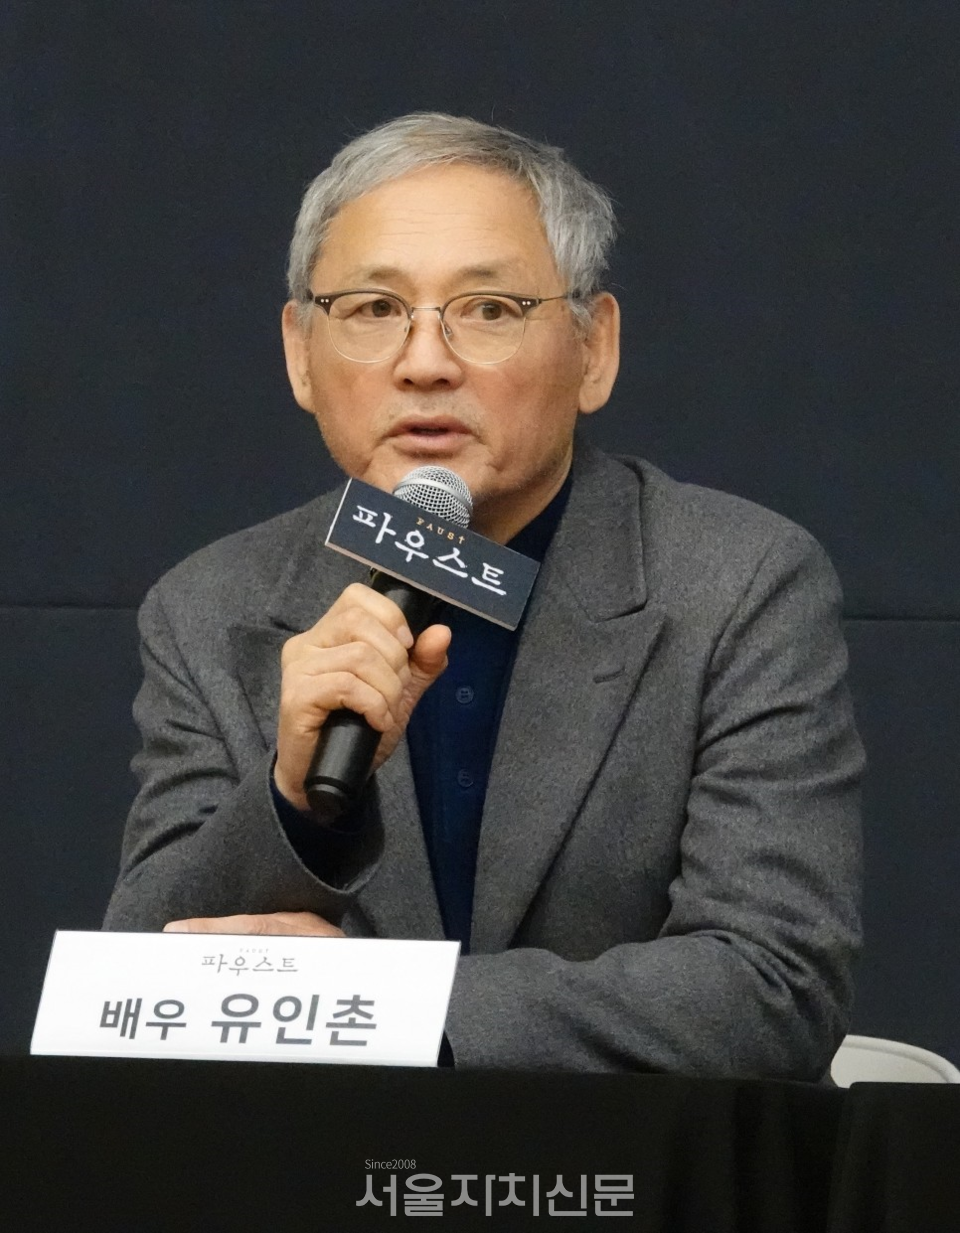 ▶ 파우스트 역의 배우 유인촌